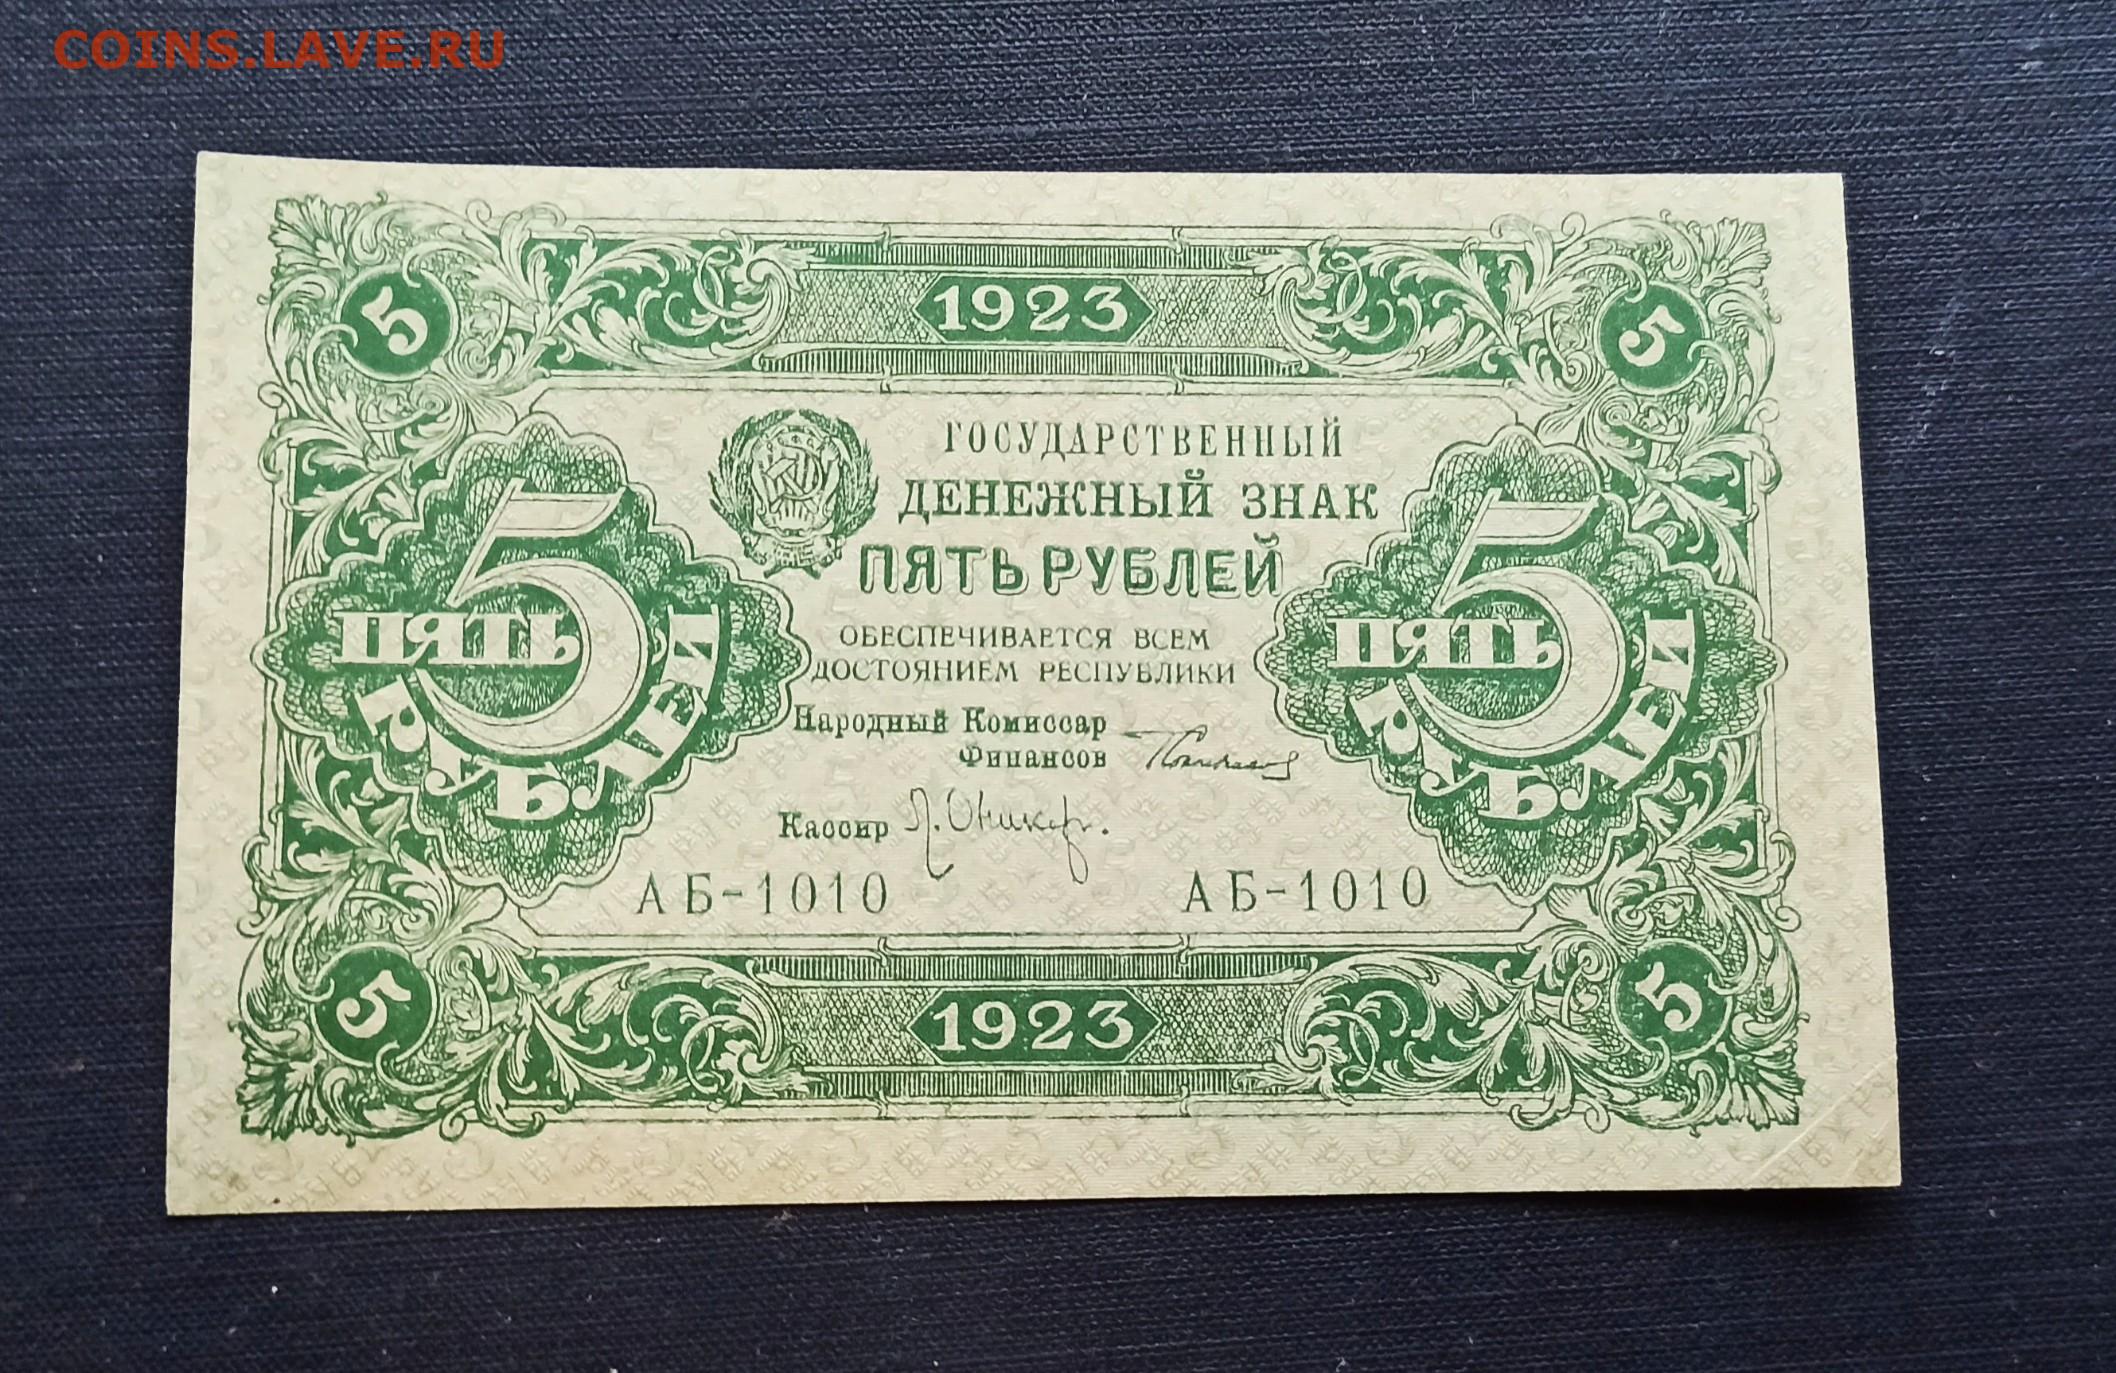 5 рублей выпуски. 5 Рублей 1923 года. Деньги 1830 года бумажные. Рубль 1923 года. Купюры 1830 год.